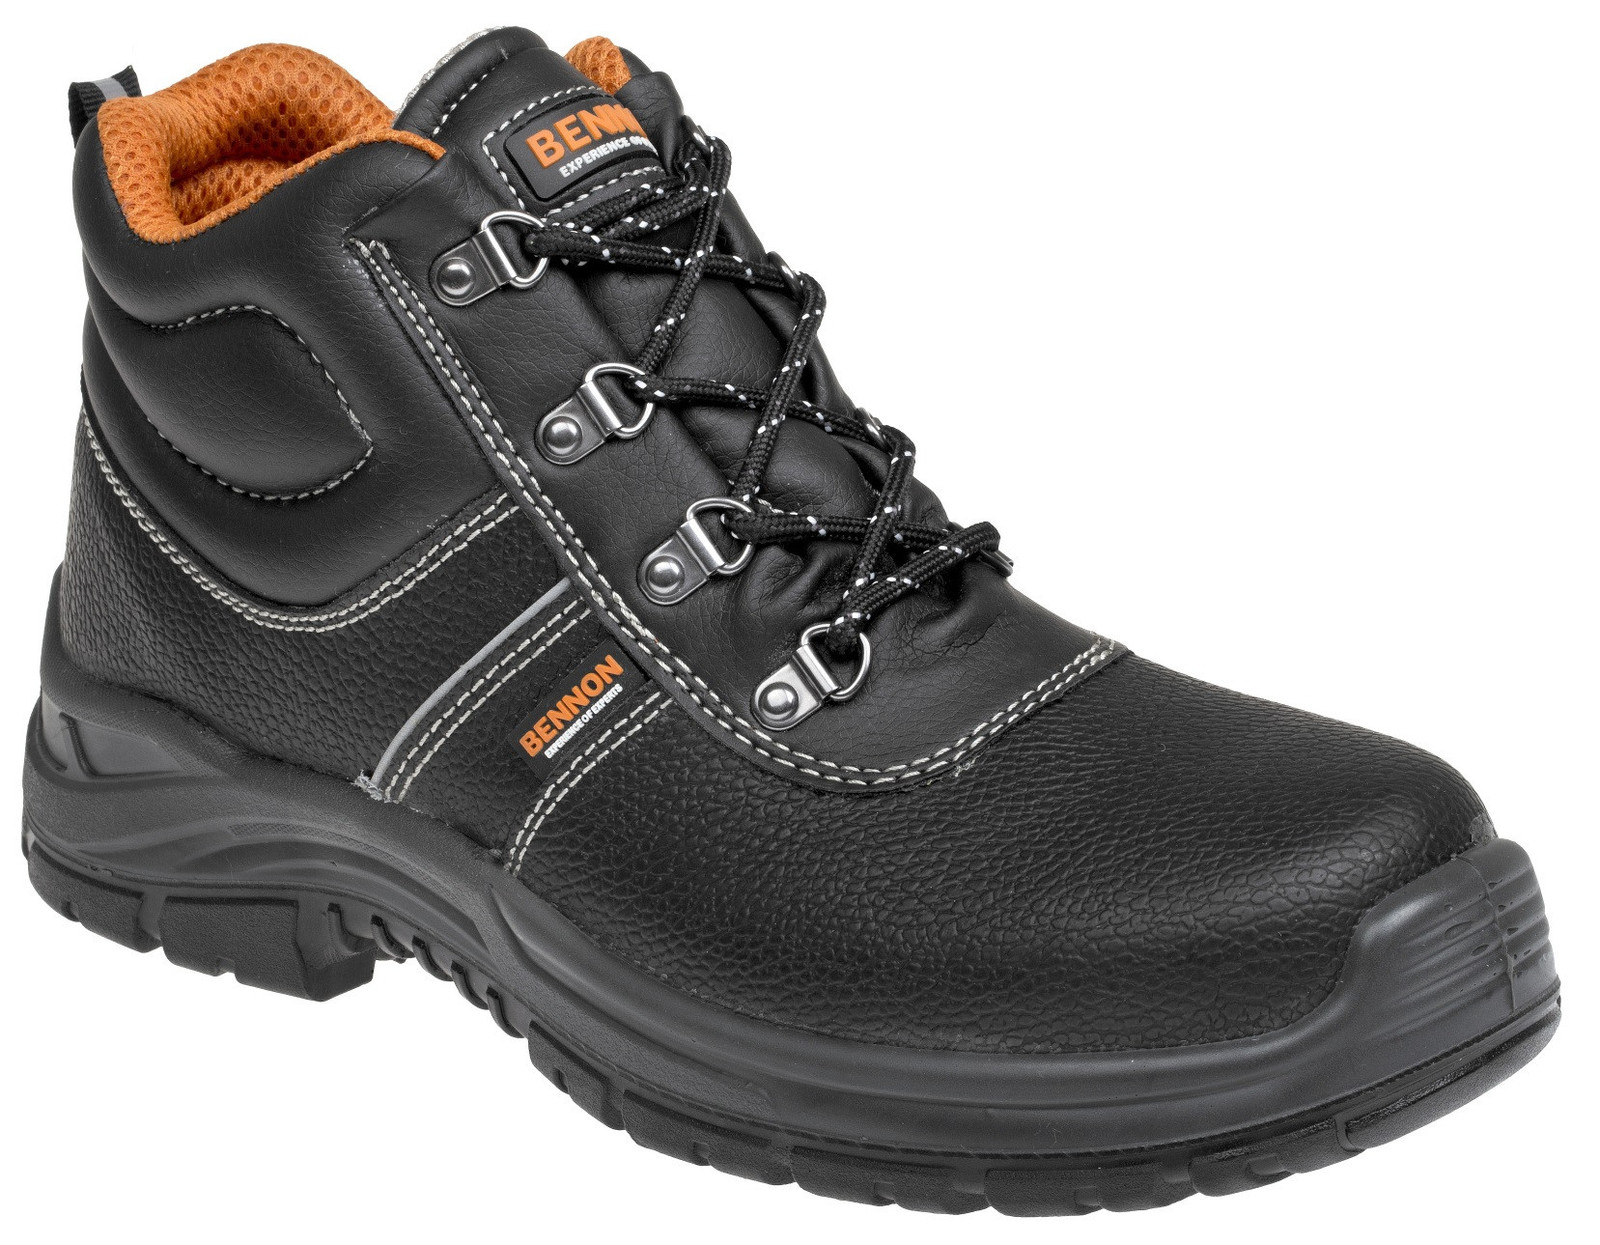 Bezpečnostná obuv Bennon Basic S3 - veľkosť: 44, farba: čierna